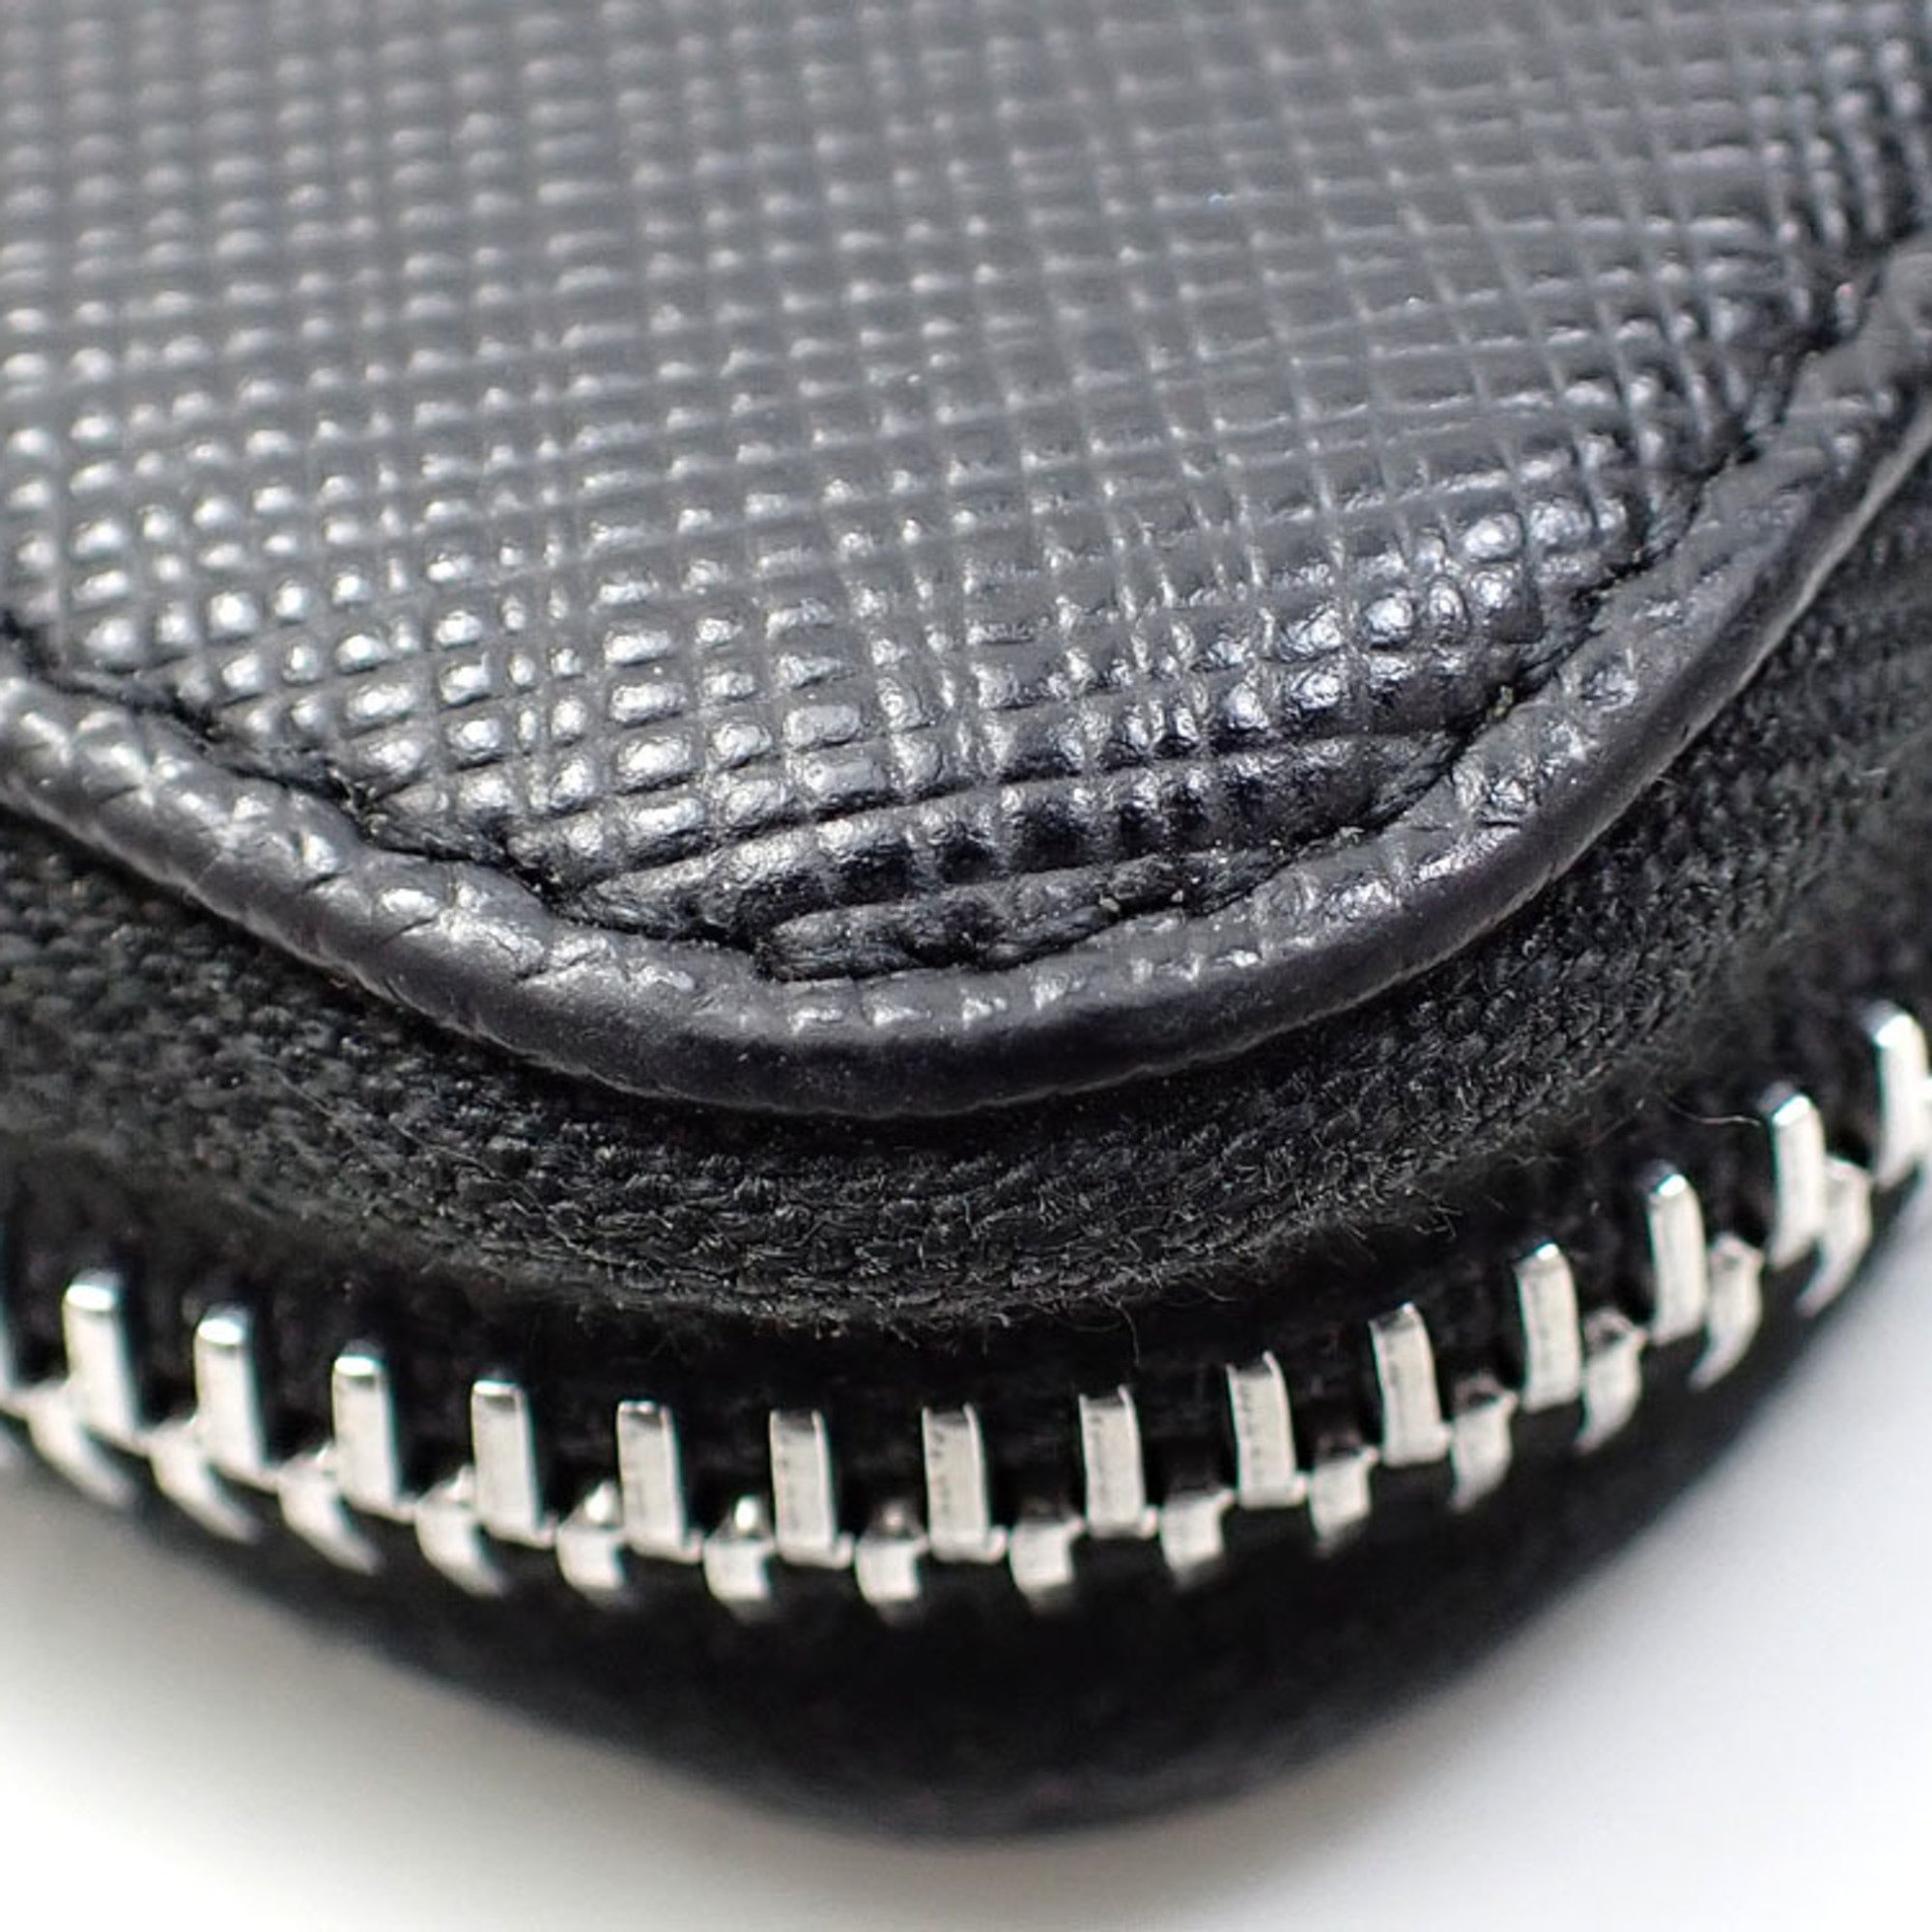 Prada Coin Case Nero Saffiano Leather 2MM358 QHH F0002 Purse for Women and Men